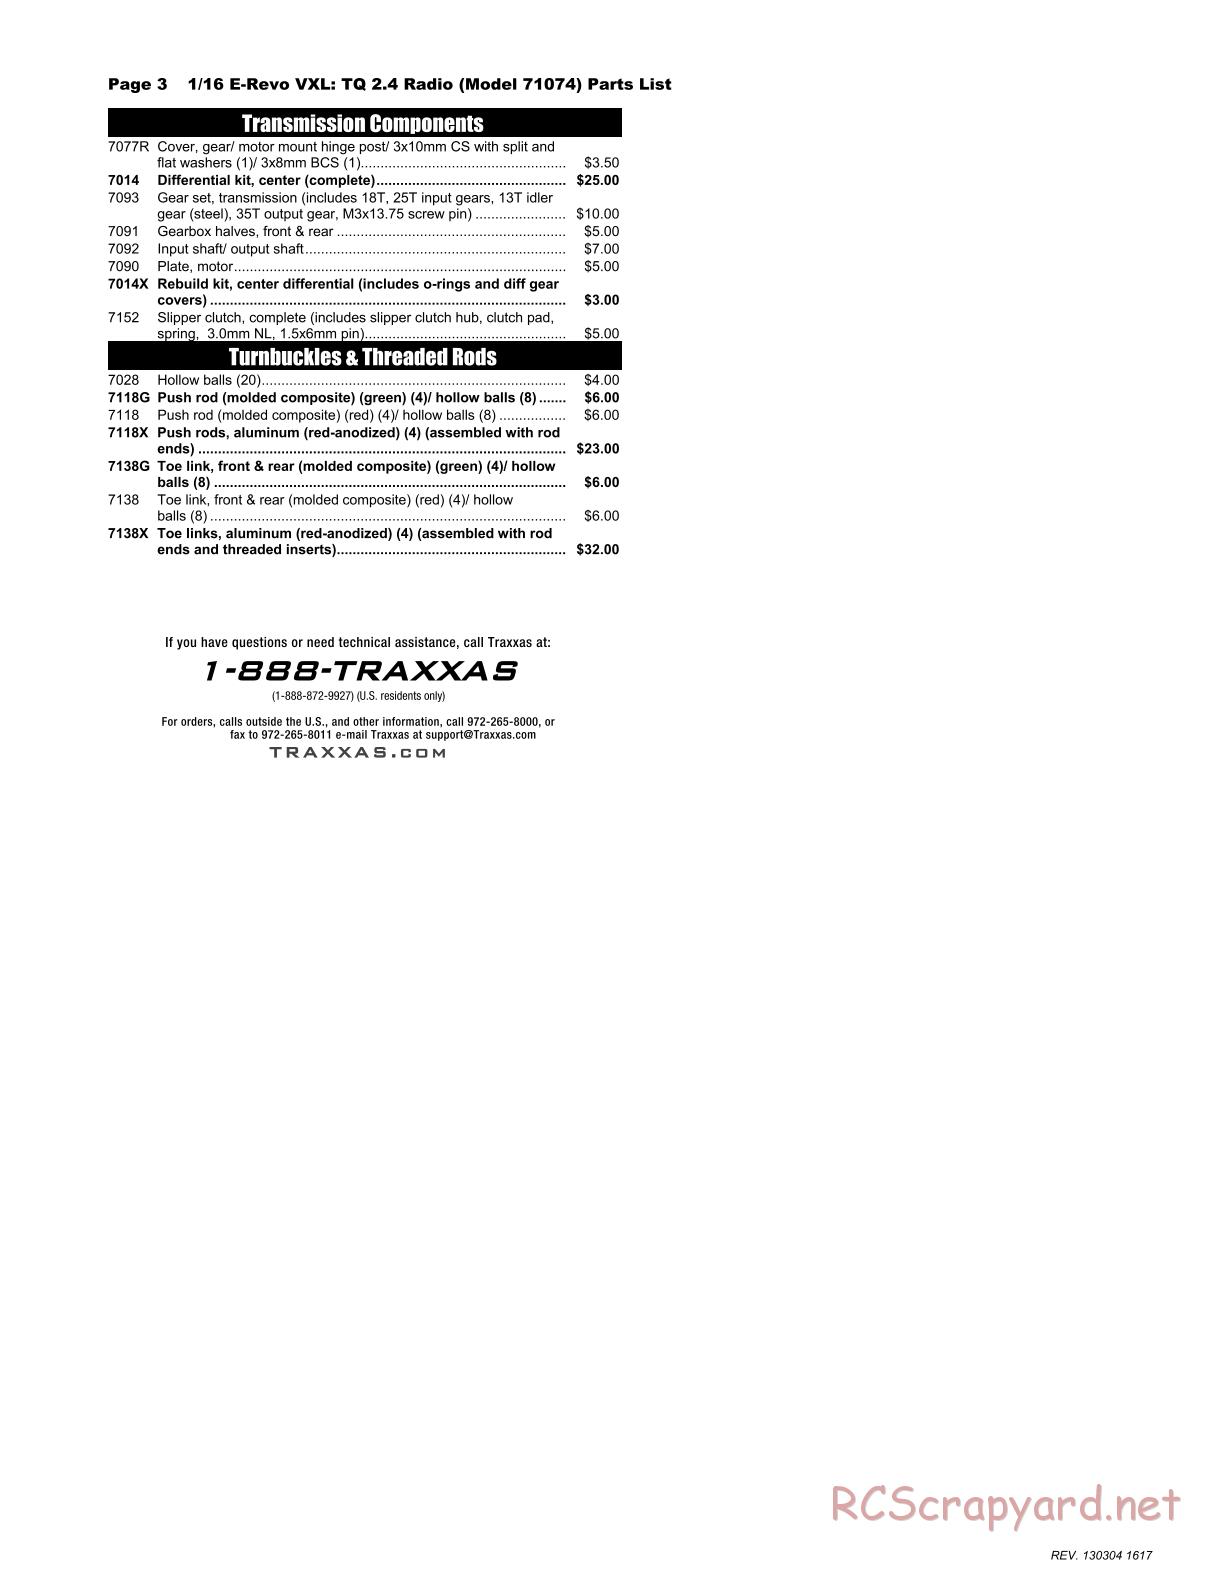 Traxxas - 1/16 E-Revo VXL (2012) - Parts List - Page 3